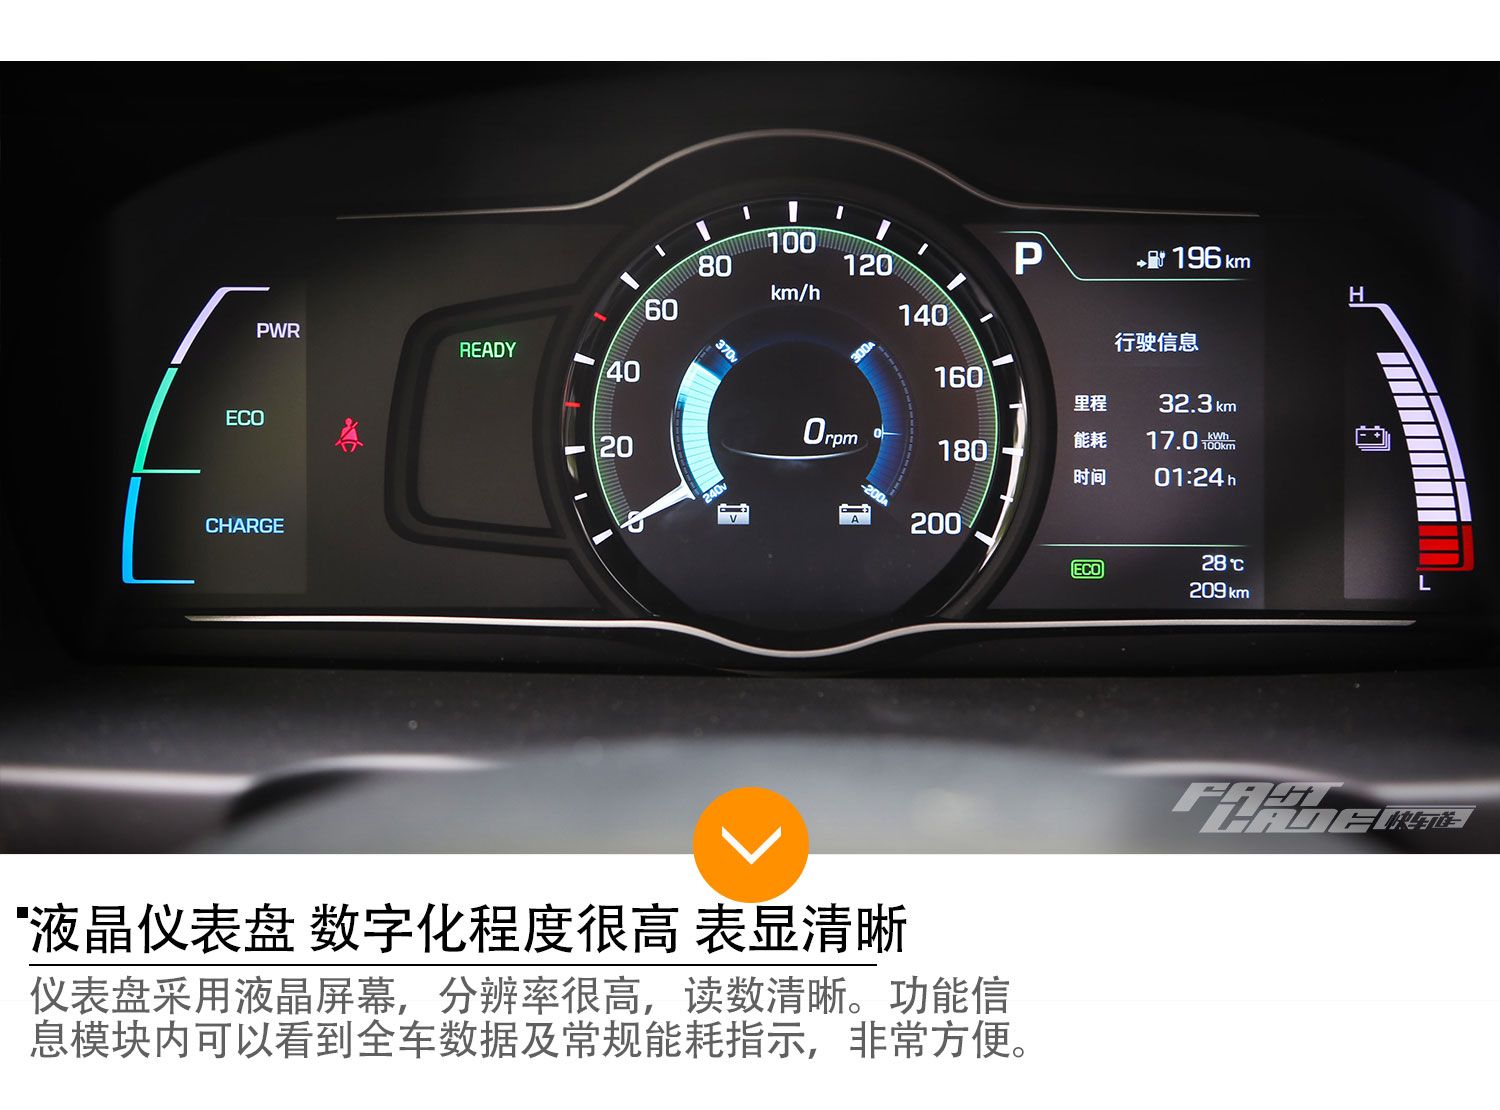 环保新势力 车讯网试驾北京现代伊兰特EV